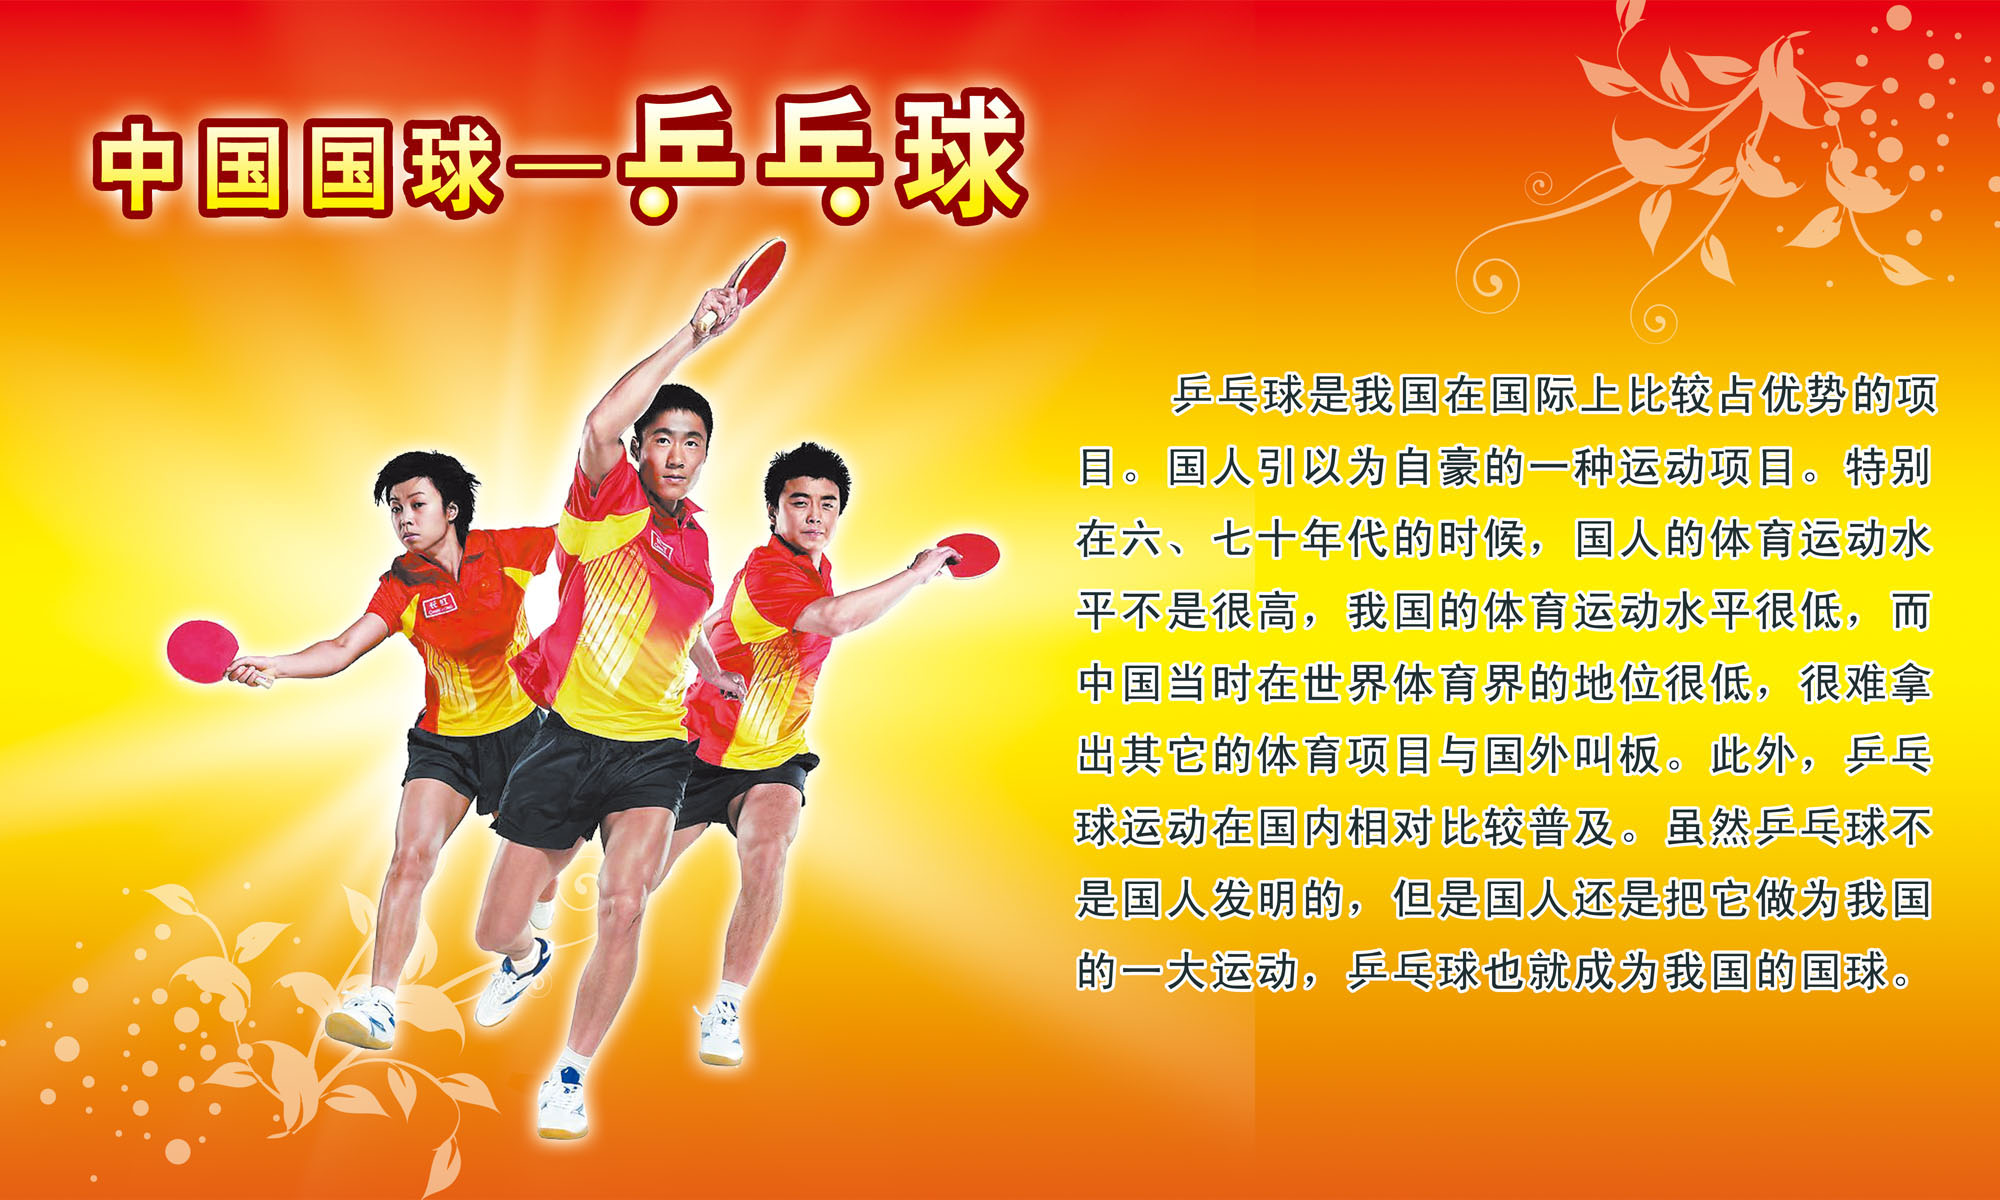 598海报印制海报展板素材19中国国球乒乓球比赛简介绍